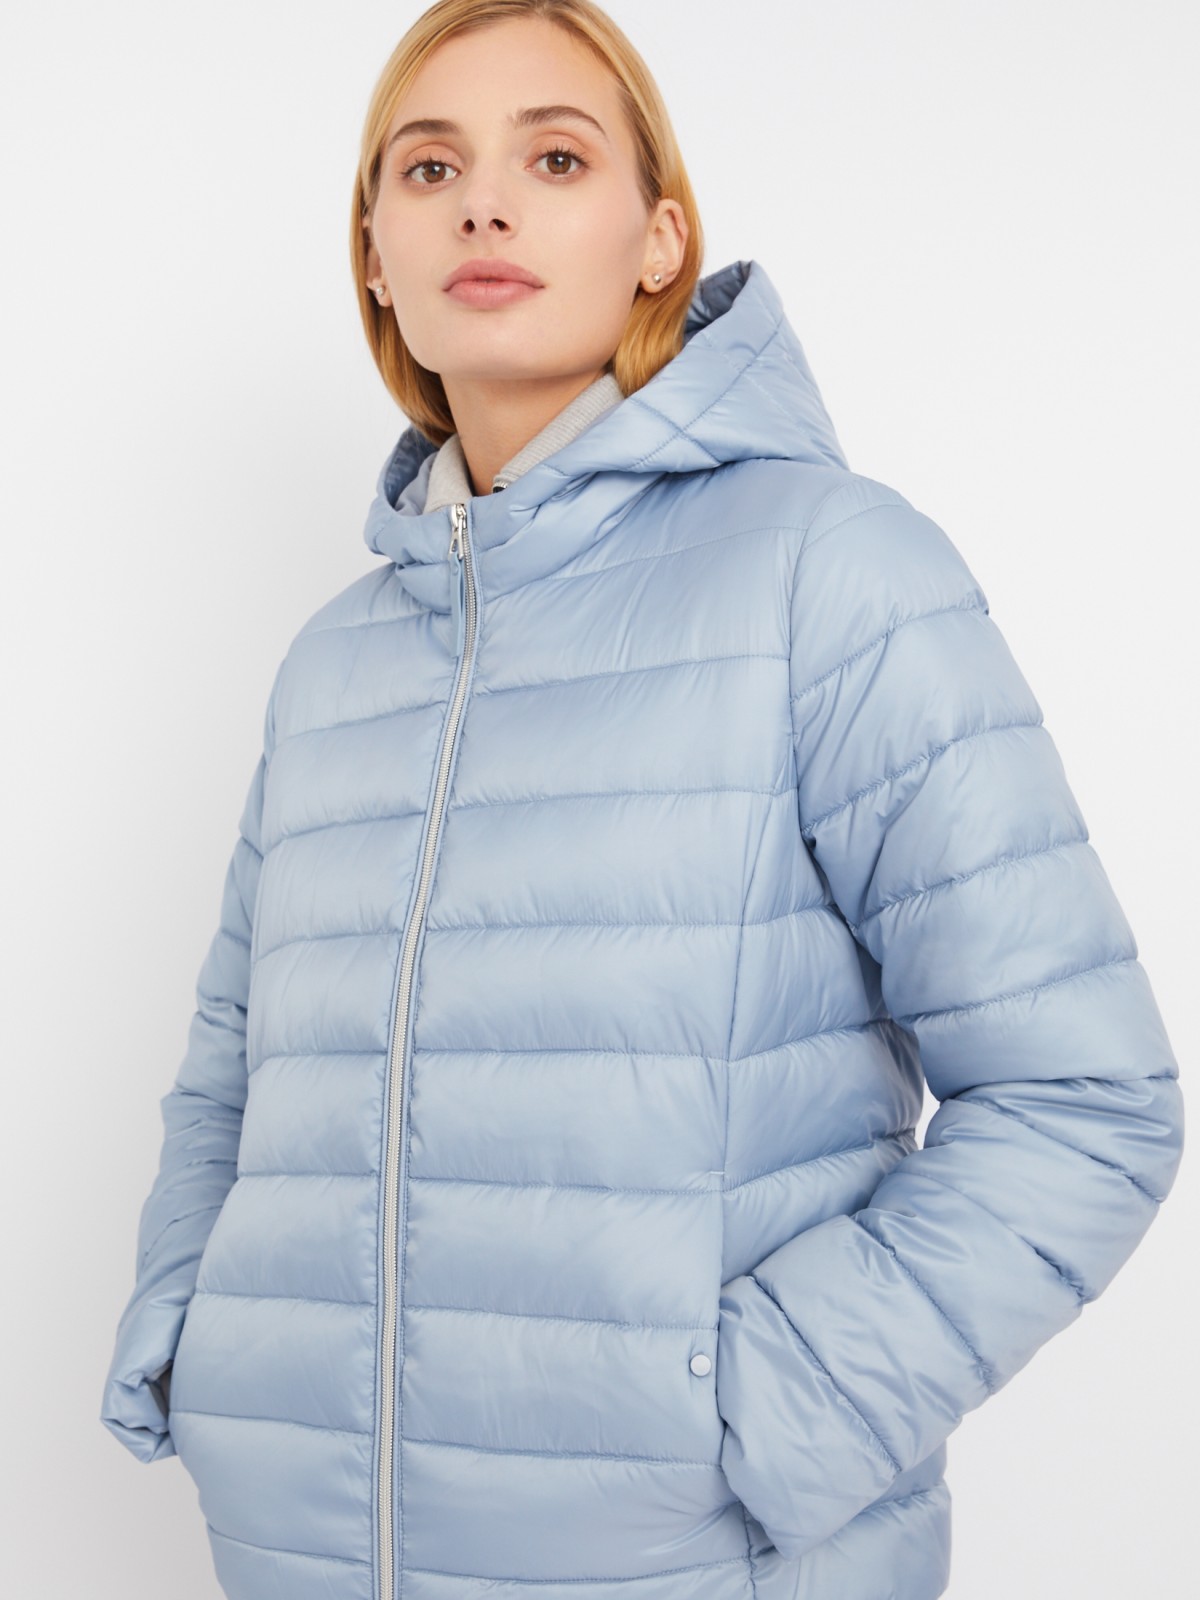 Утеплённая стёганая куртка укороченного фасона с капюшоном zolla 023335112224, цвет голубой, размер S - фото 3